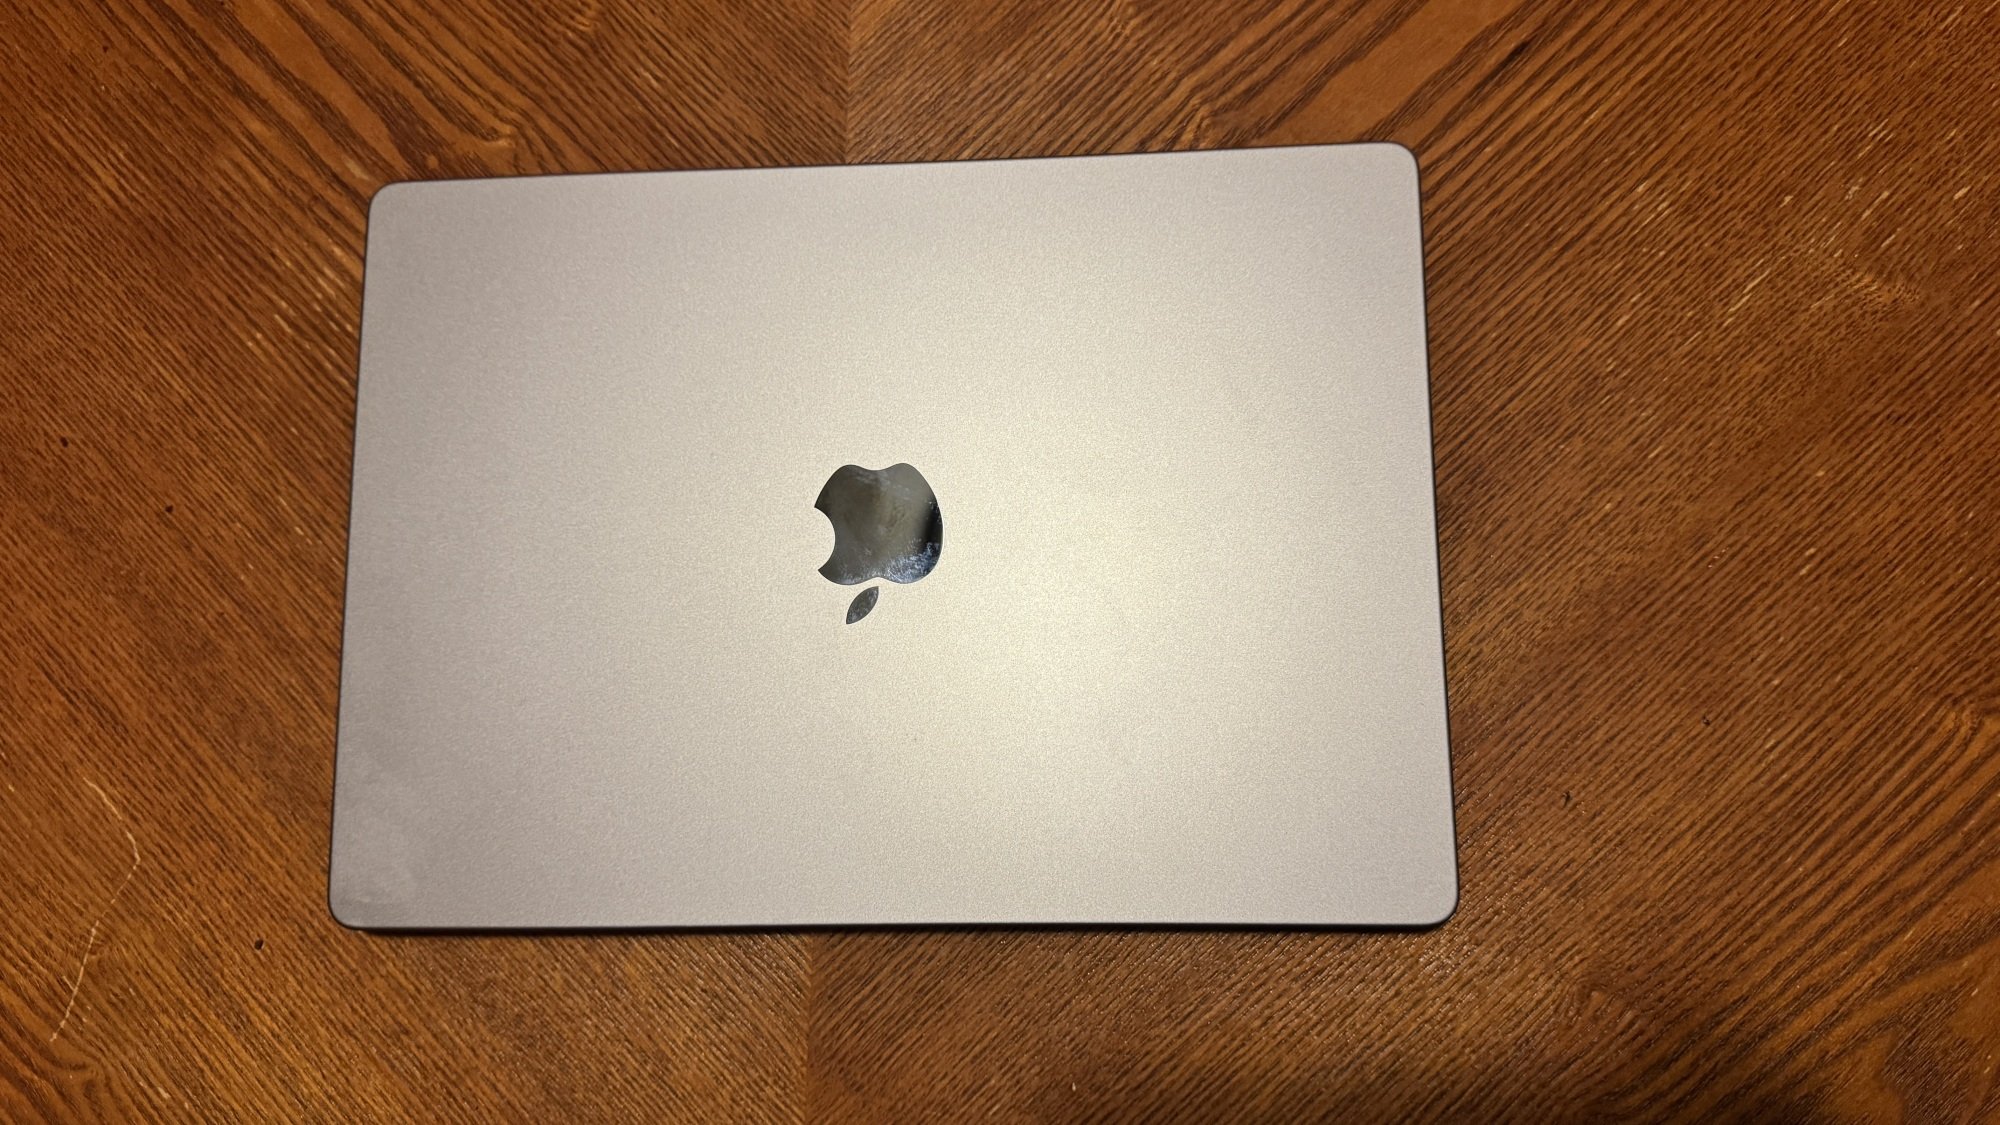 M3 14-inch MacBook Pro lid